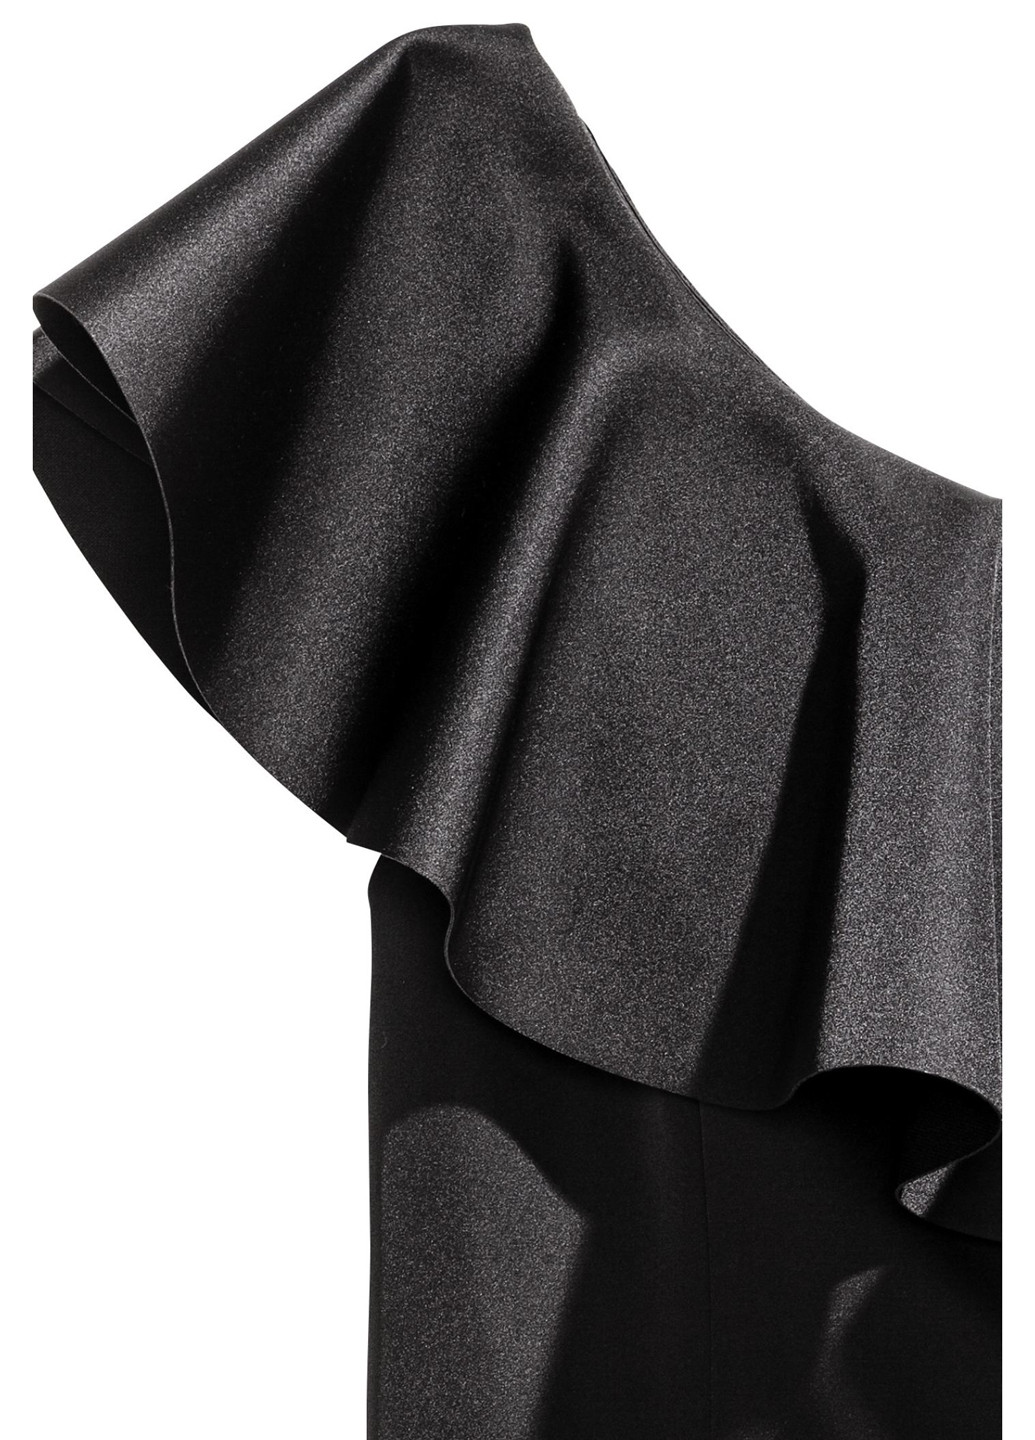 Комбинезон H&M комбинезон-шорты однотонный чёрный вечерний атлас, полиэстер